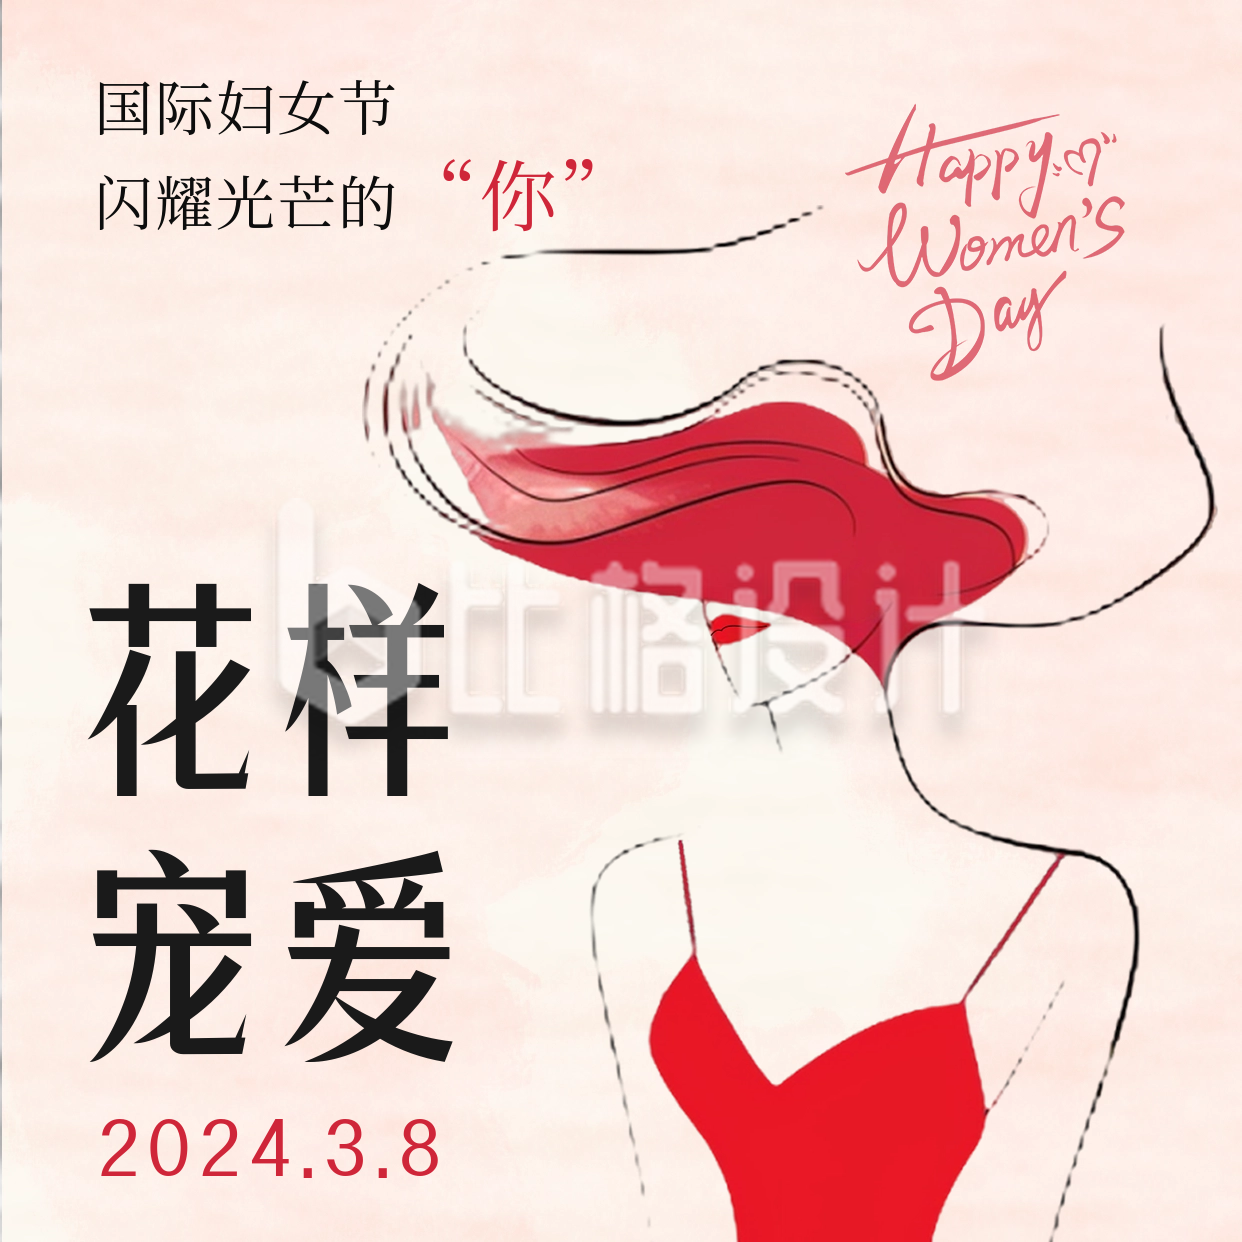 国际妇女节节日祝福方形海报